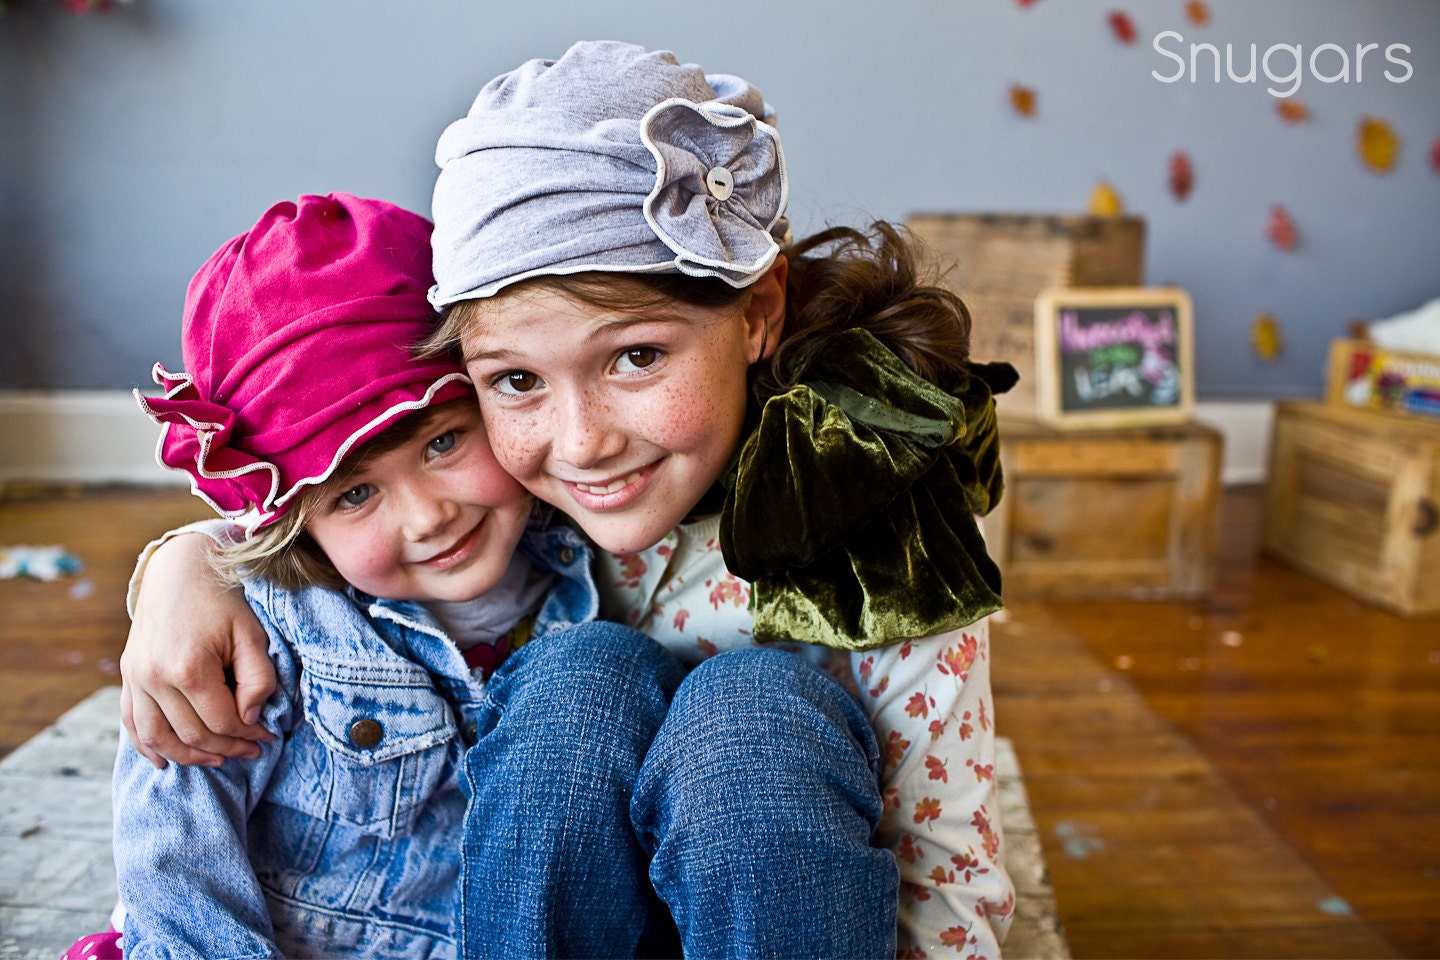 стильный шляпу Шоппинг в серой или цвета фуксии - Snugars шляпка для дам осень / зима 2011